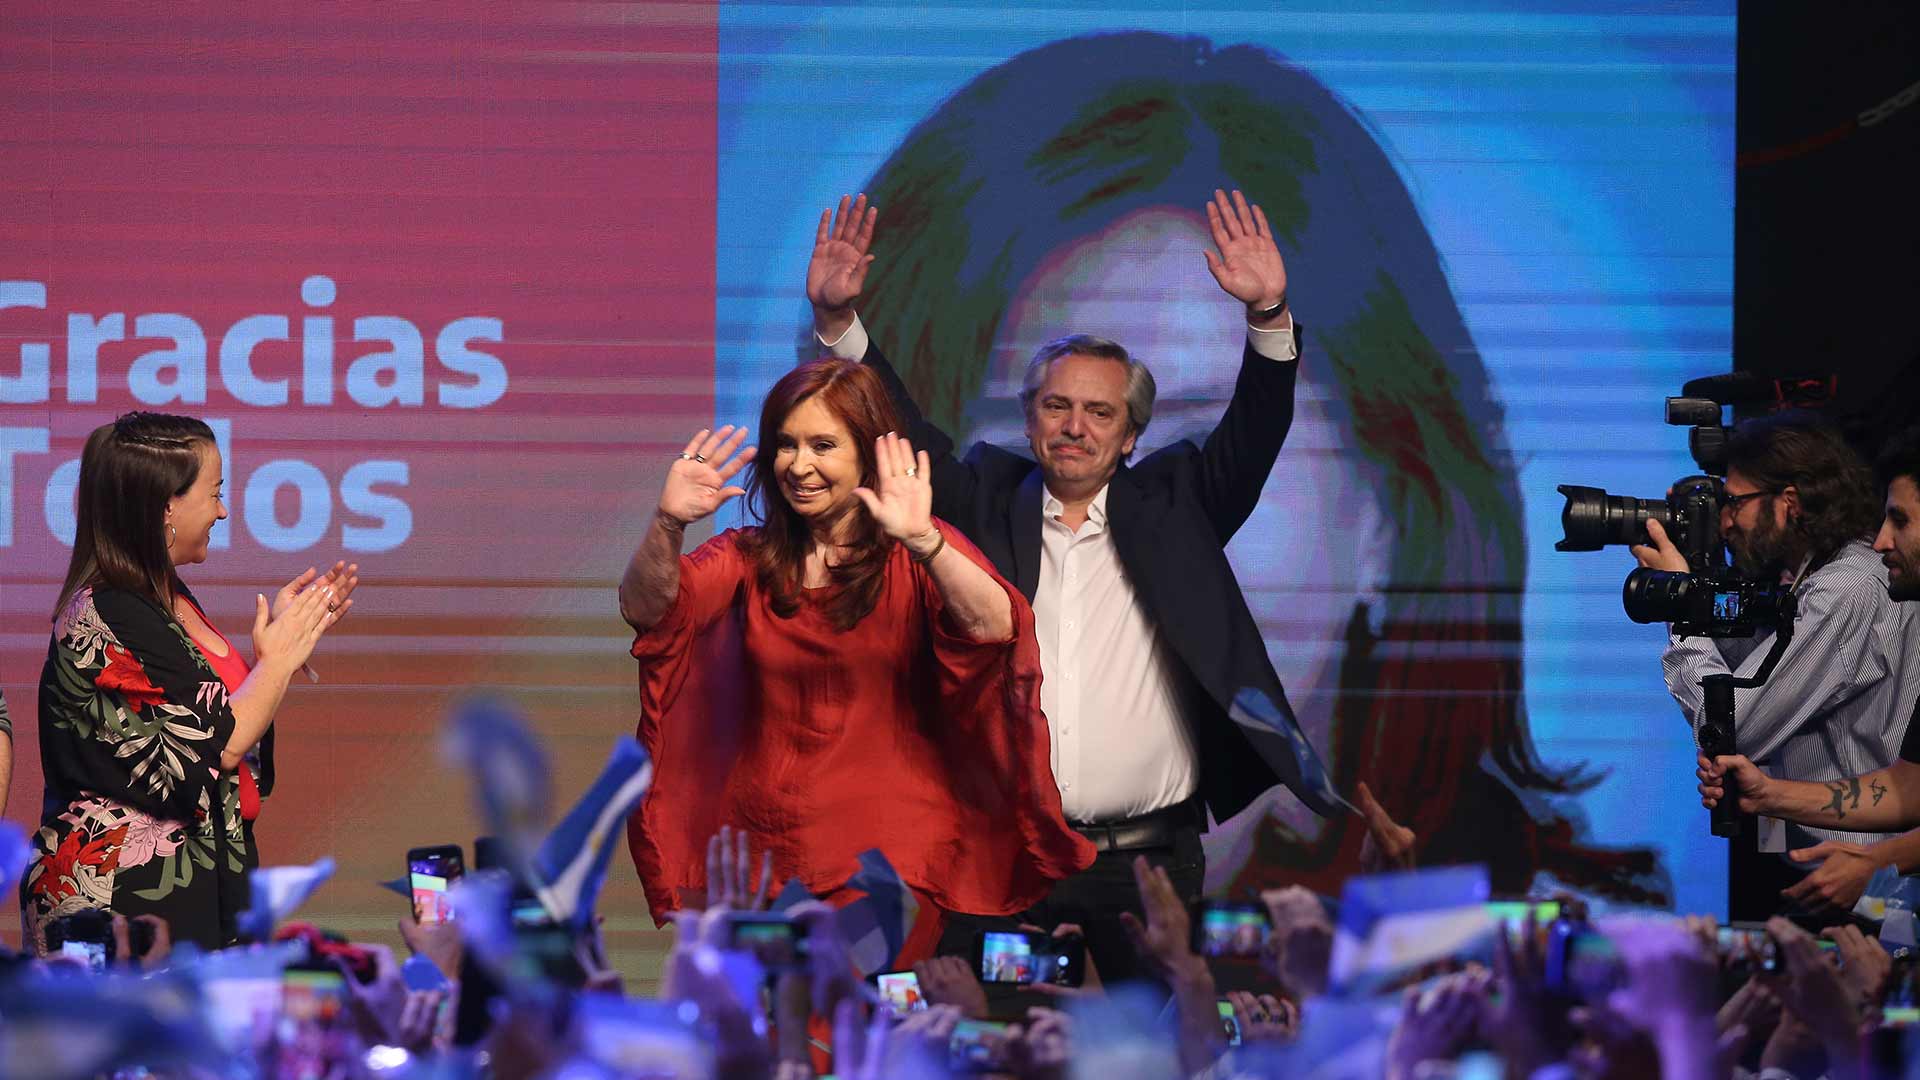 El peronista Fernández vence a Macri en las elecciones de Argentina